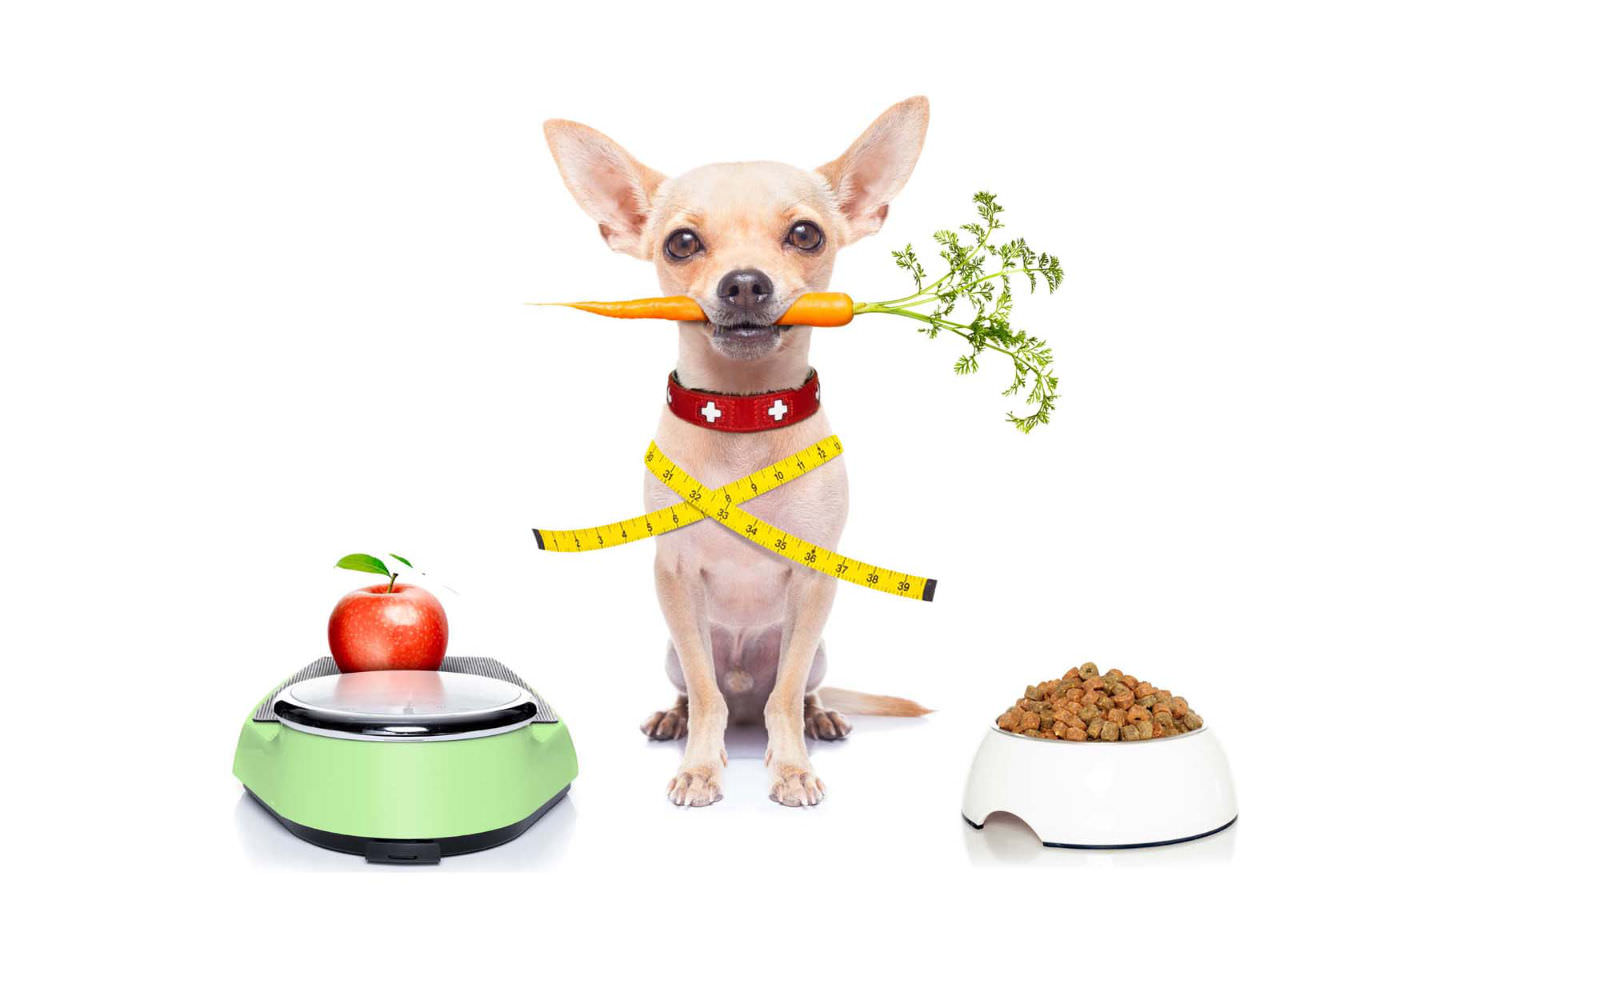 migliore composizione alimentare per cani in sovrappeso